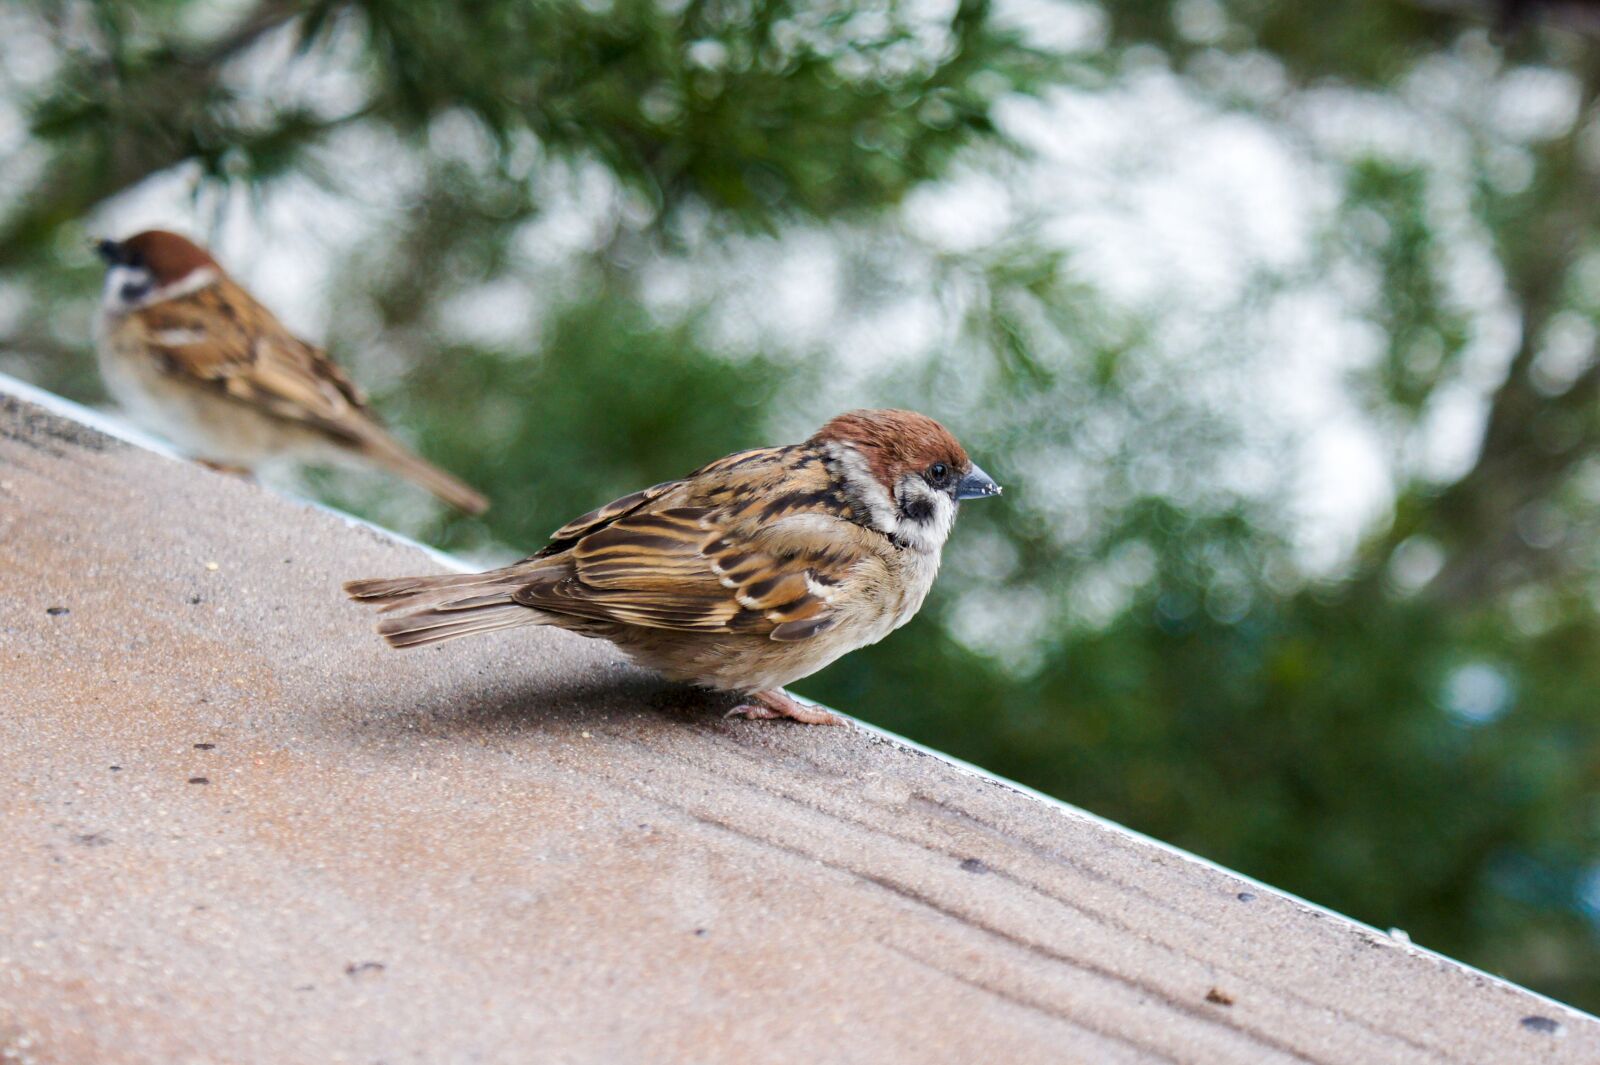 Sony SLT-A33 sample photo. Sparrow, bird, wildlife photography